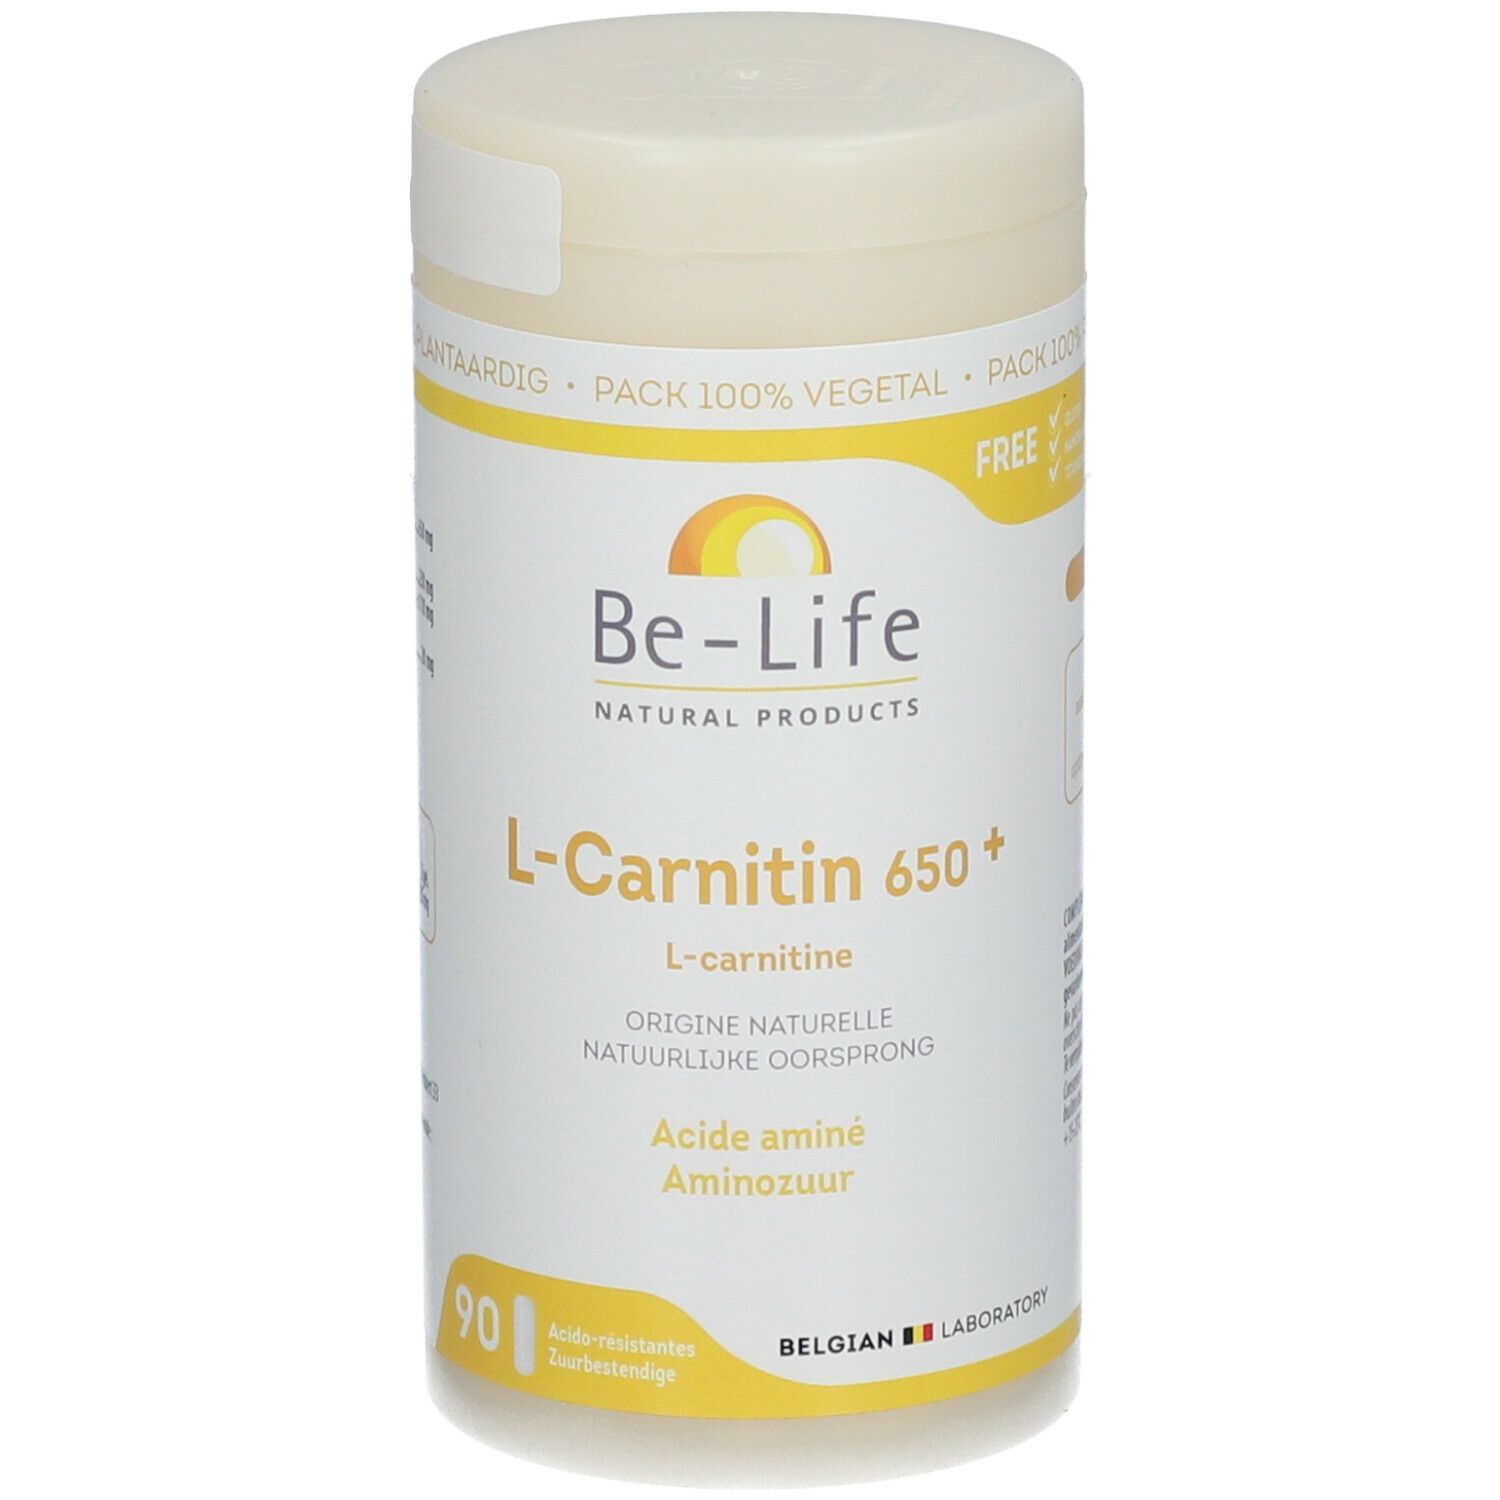 Be-Life L-Carnitin 650+